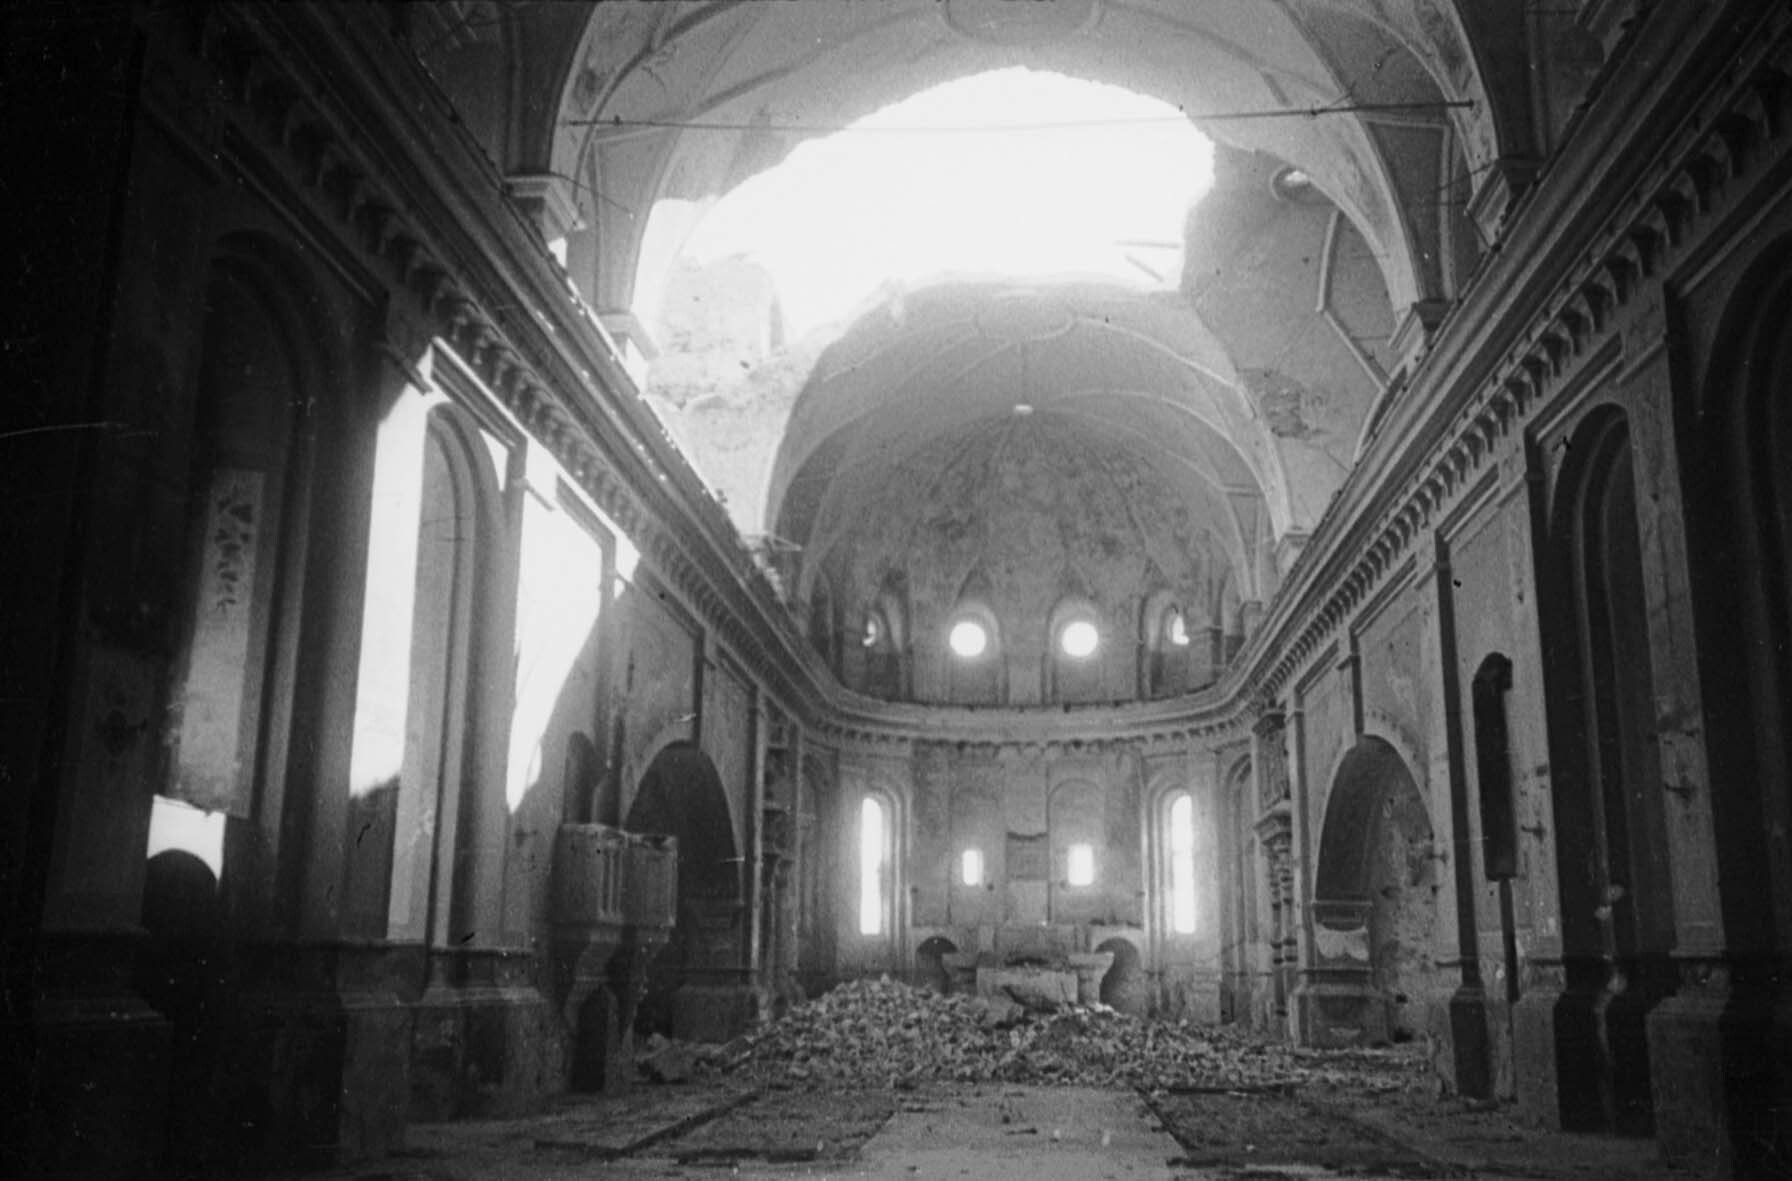 Von deutschen Truppen zerstörte Kirche in Siauliai, 16. August 1944 (Museum Berlin-Karlshorst RR-P)